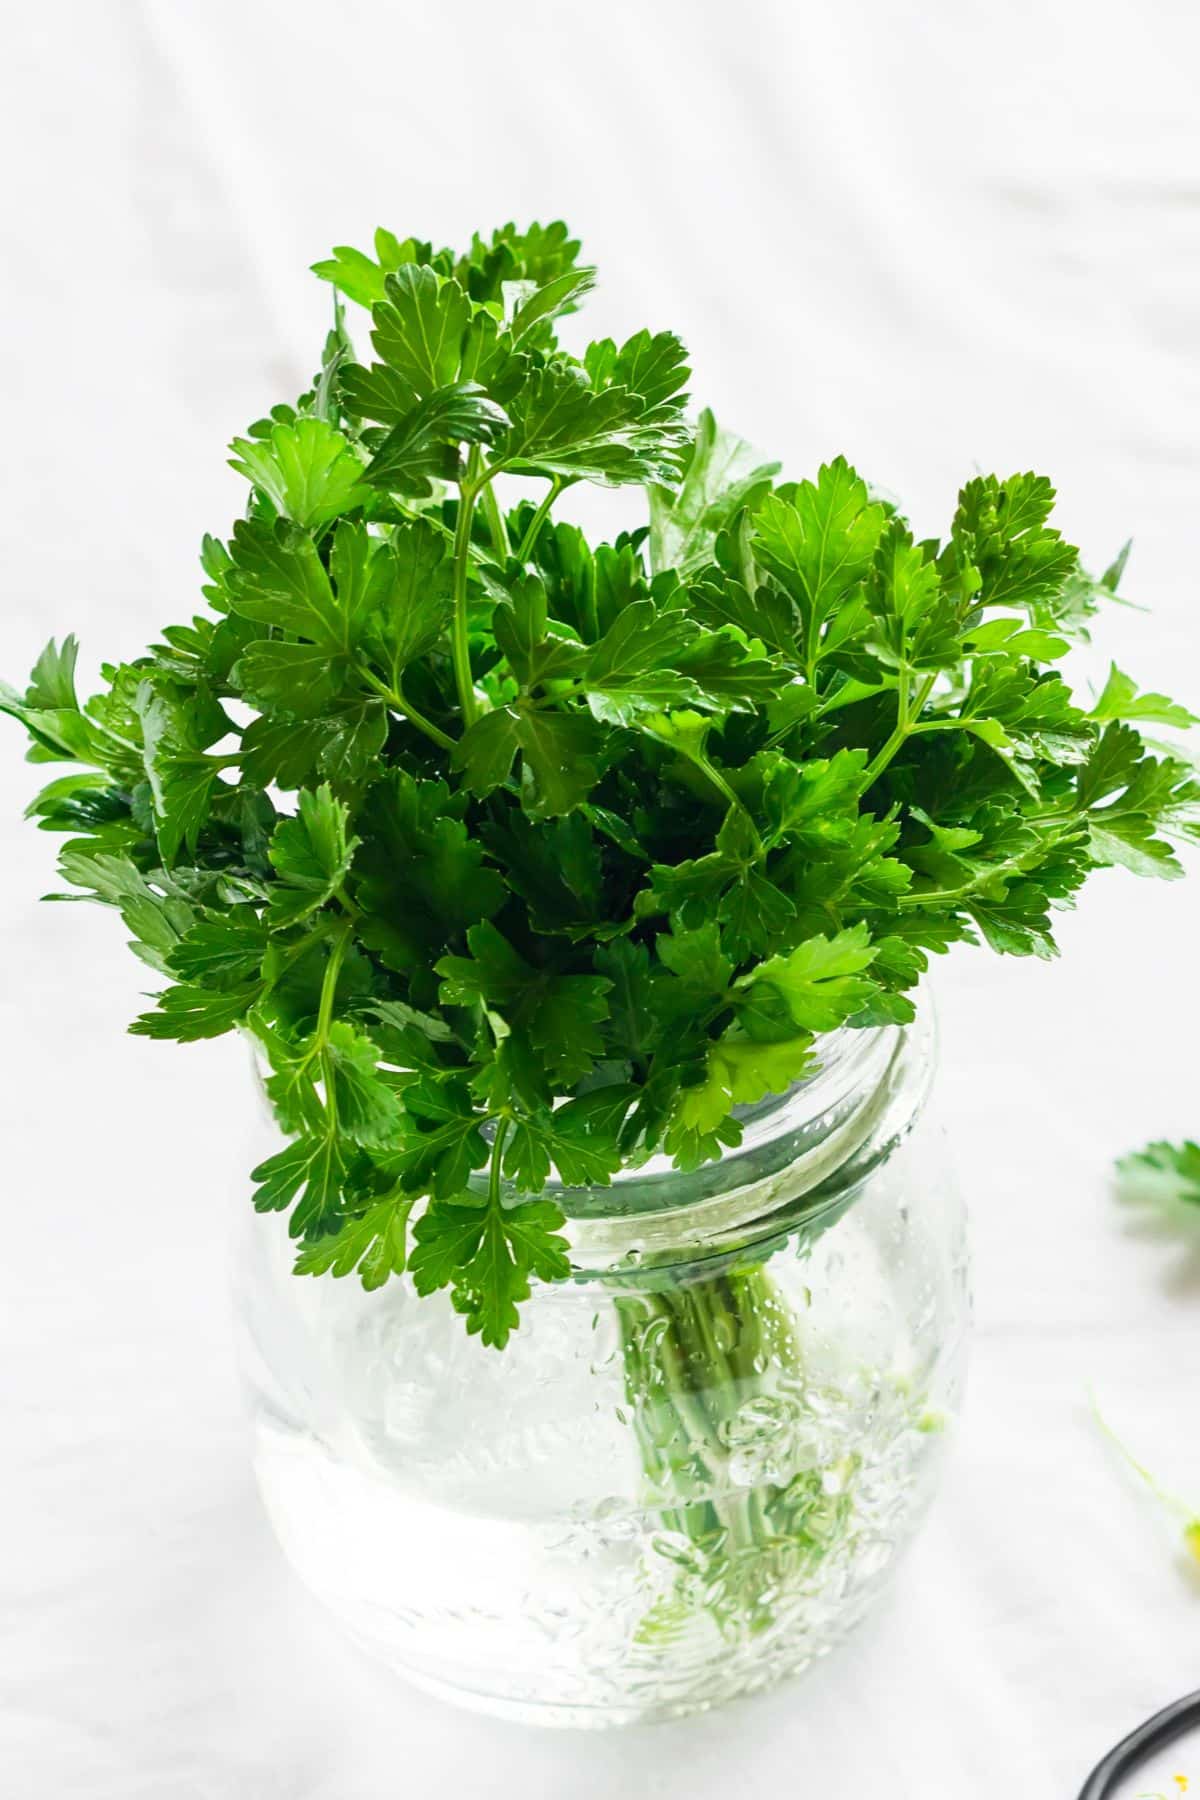 A bunch of fresh parsley in a jar.